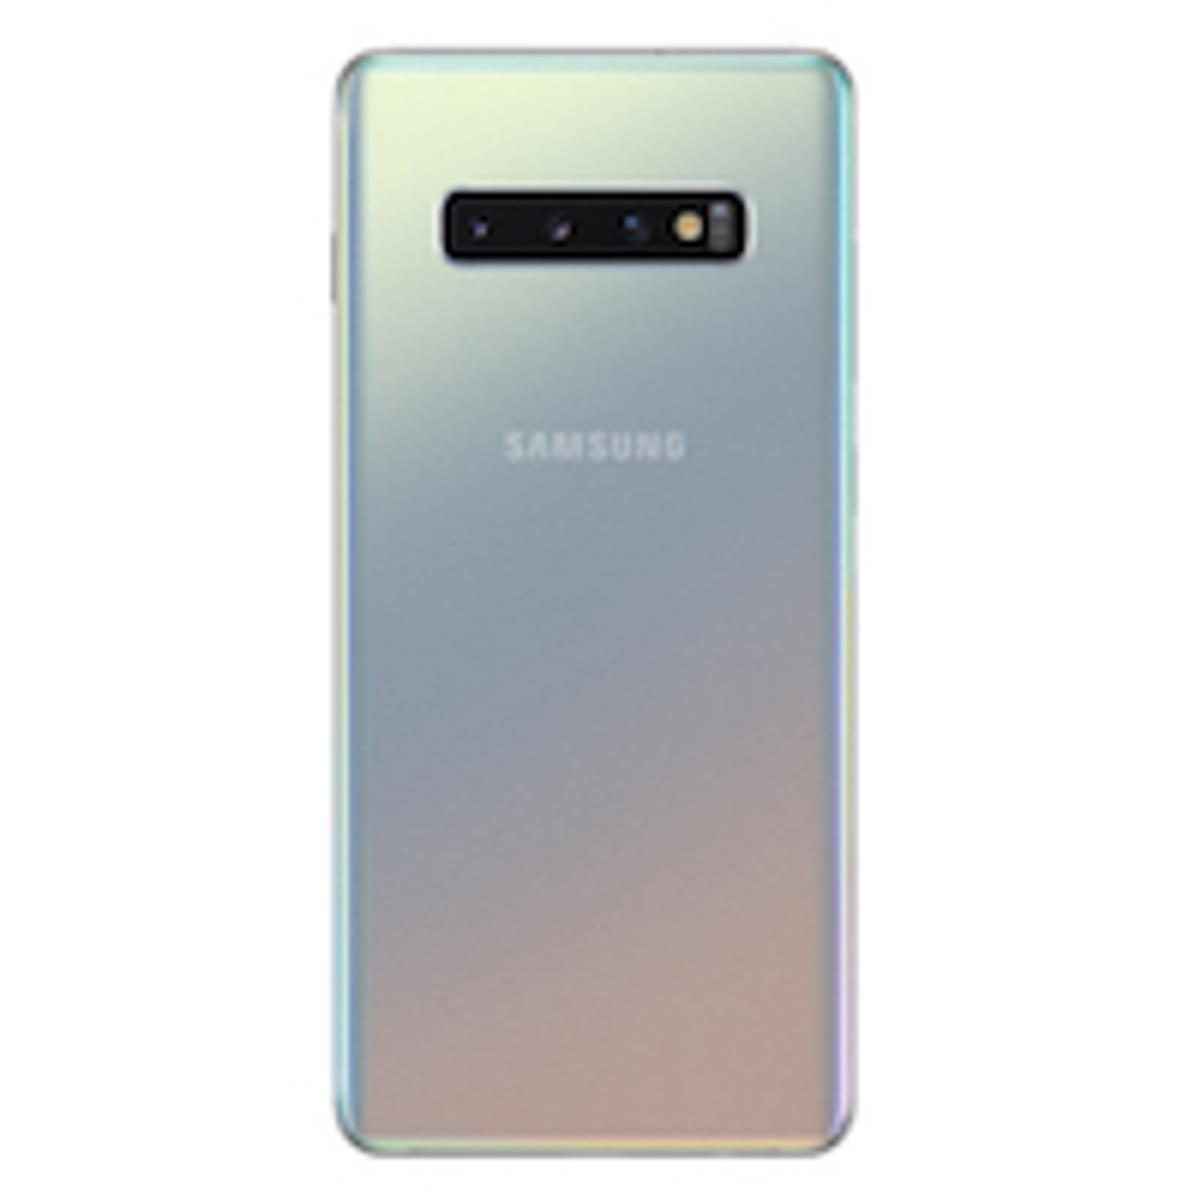 Samsung Galaxy S10 en S10+ beschikbaar in Prism Silver image